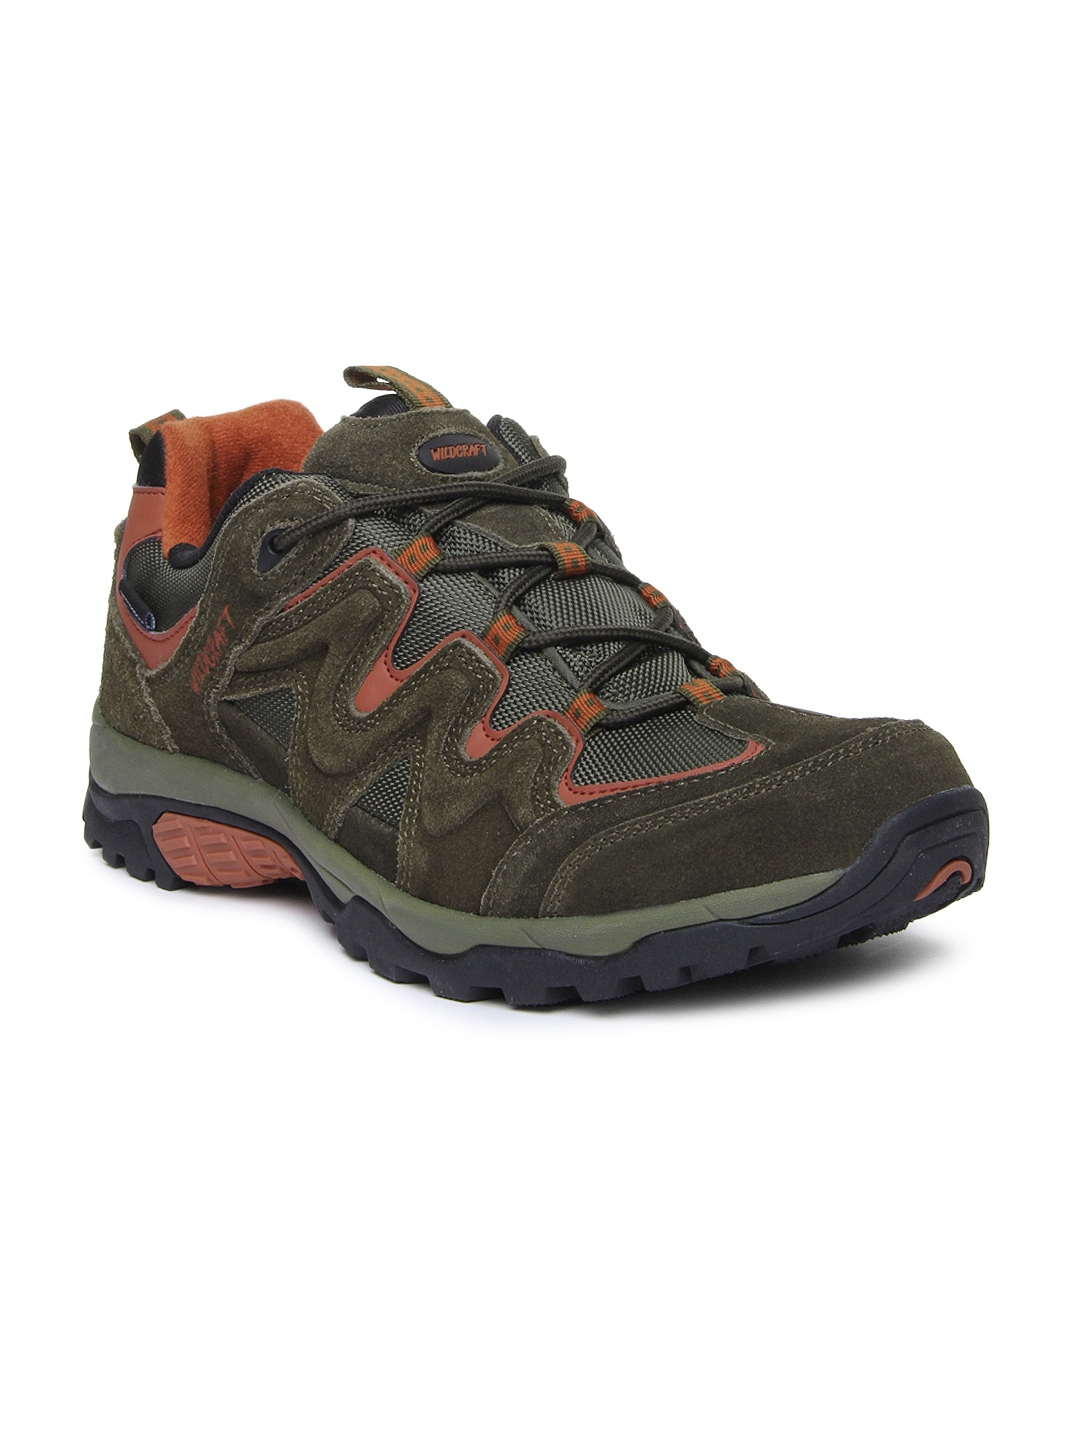 wildcraft waterproof hiking shoes